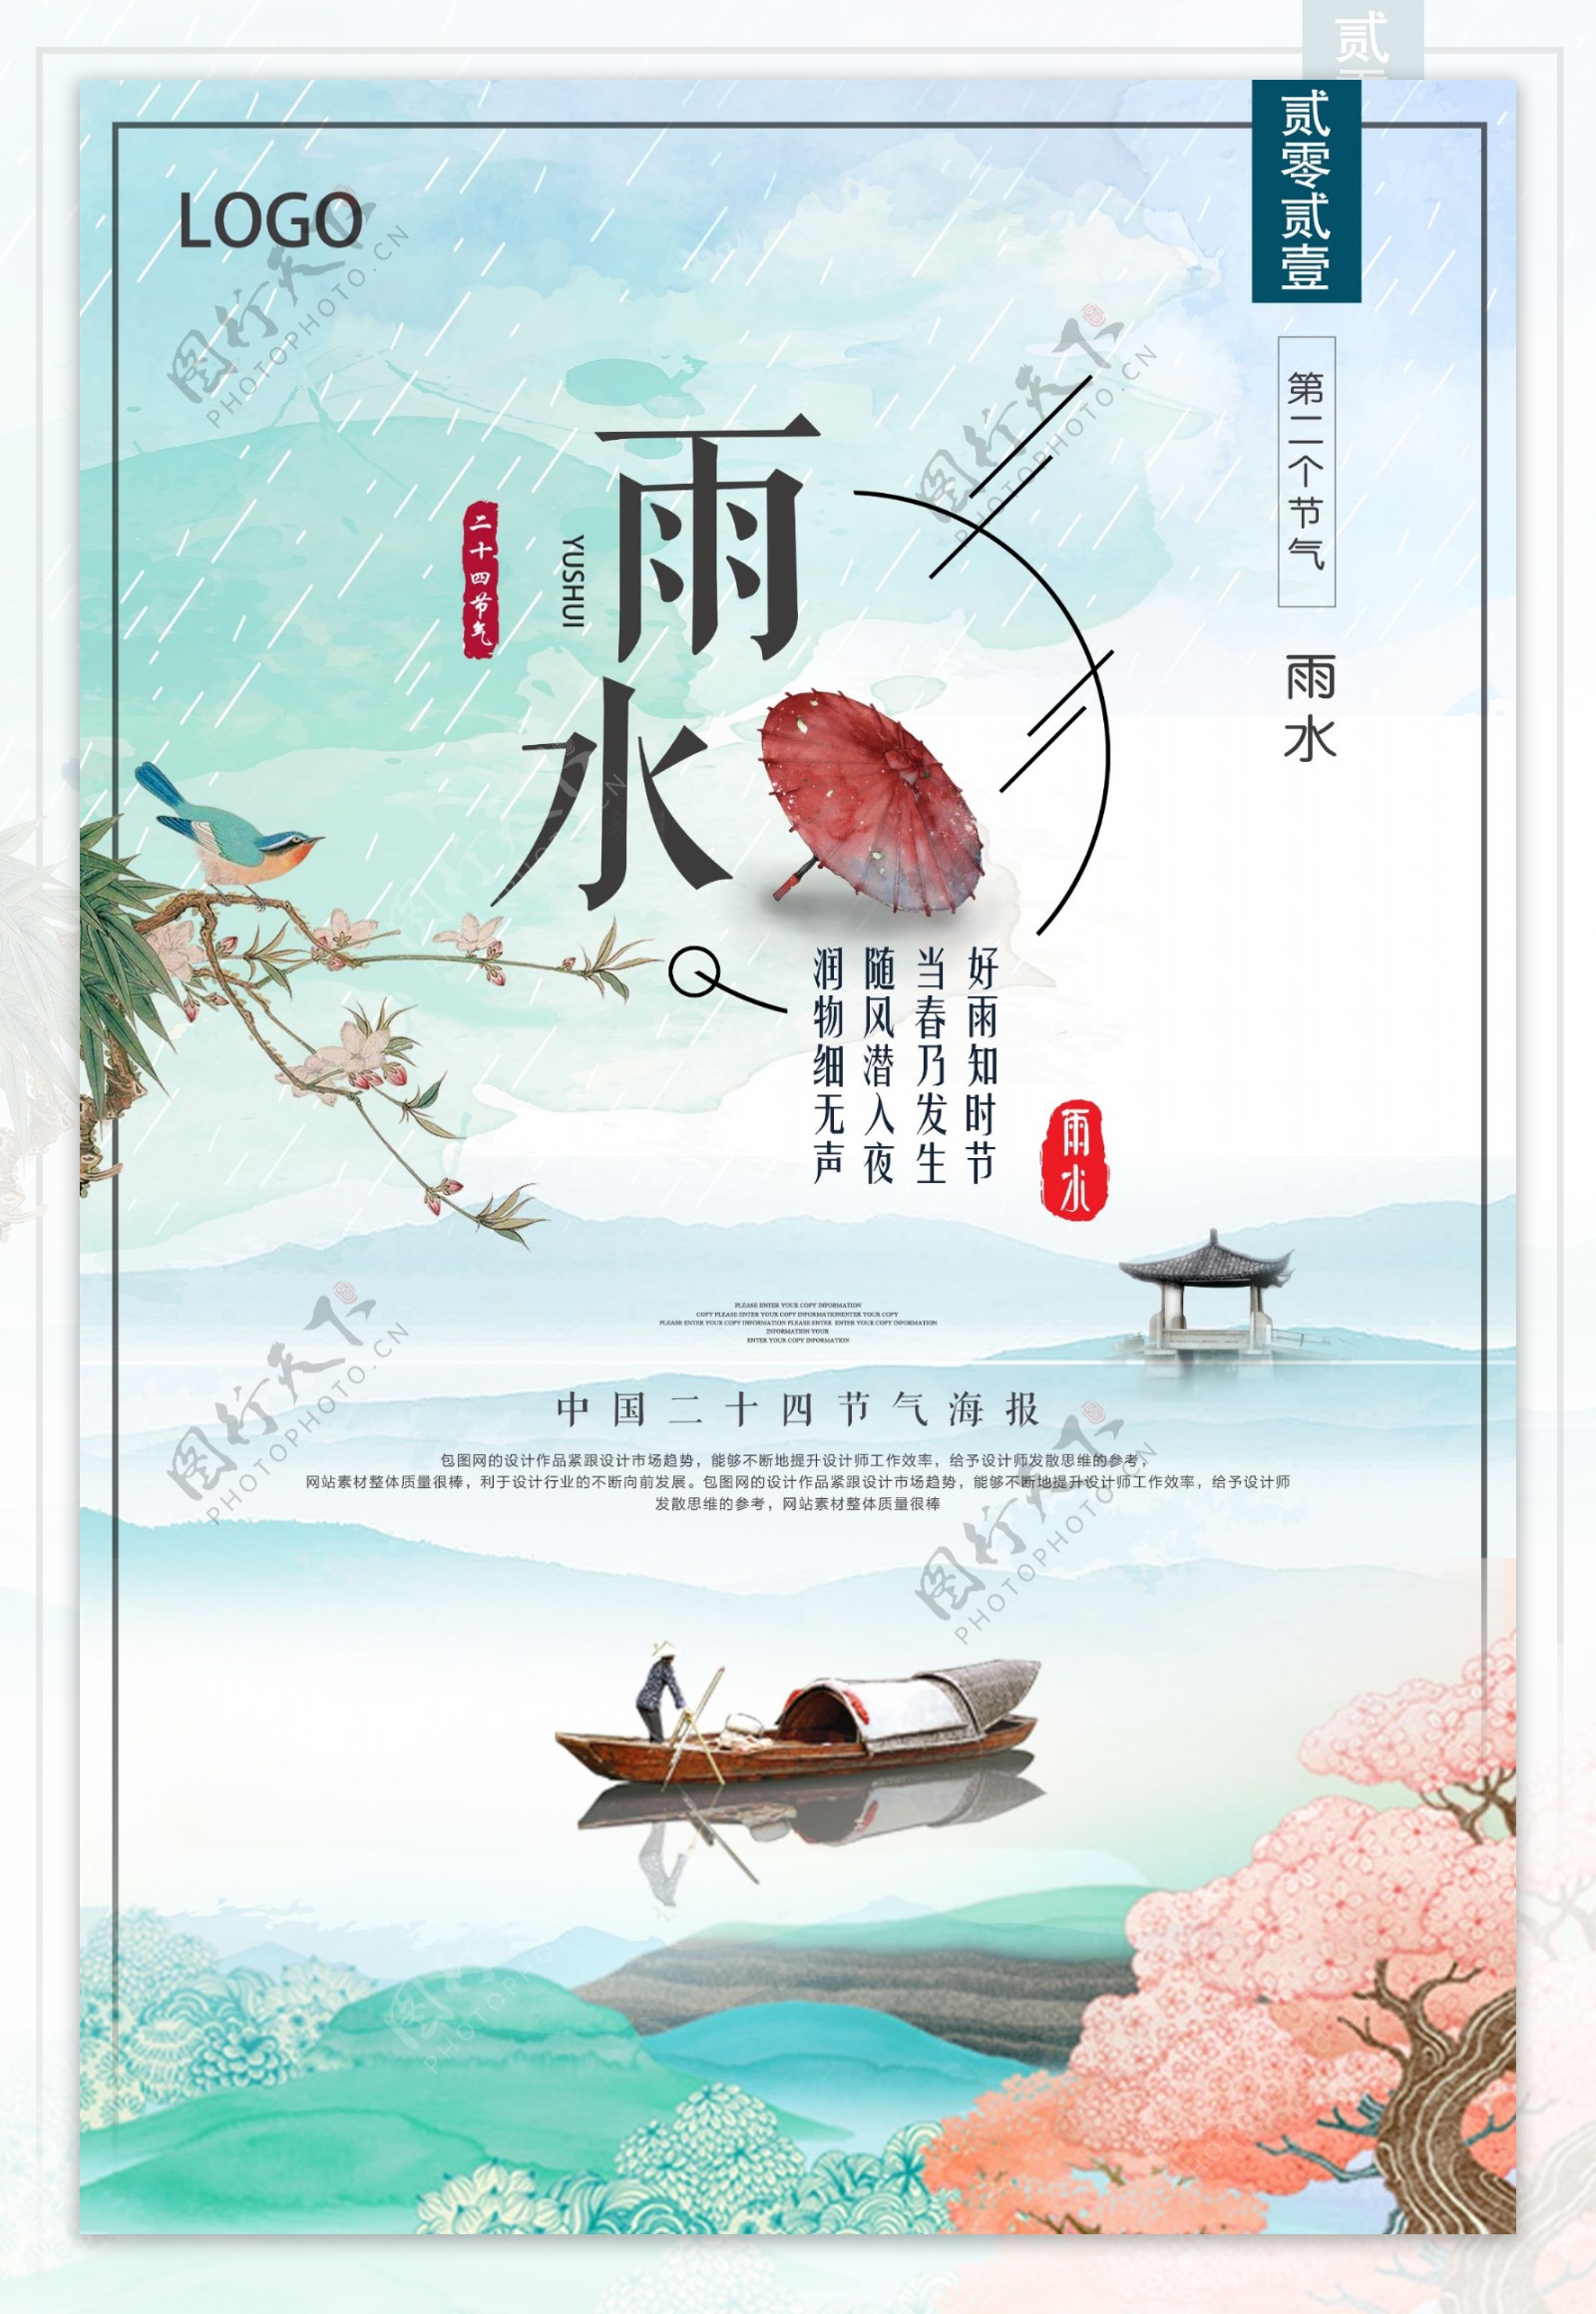 文艺清新中国风雨水节气海报